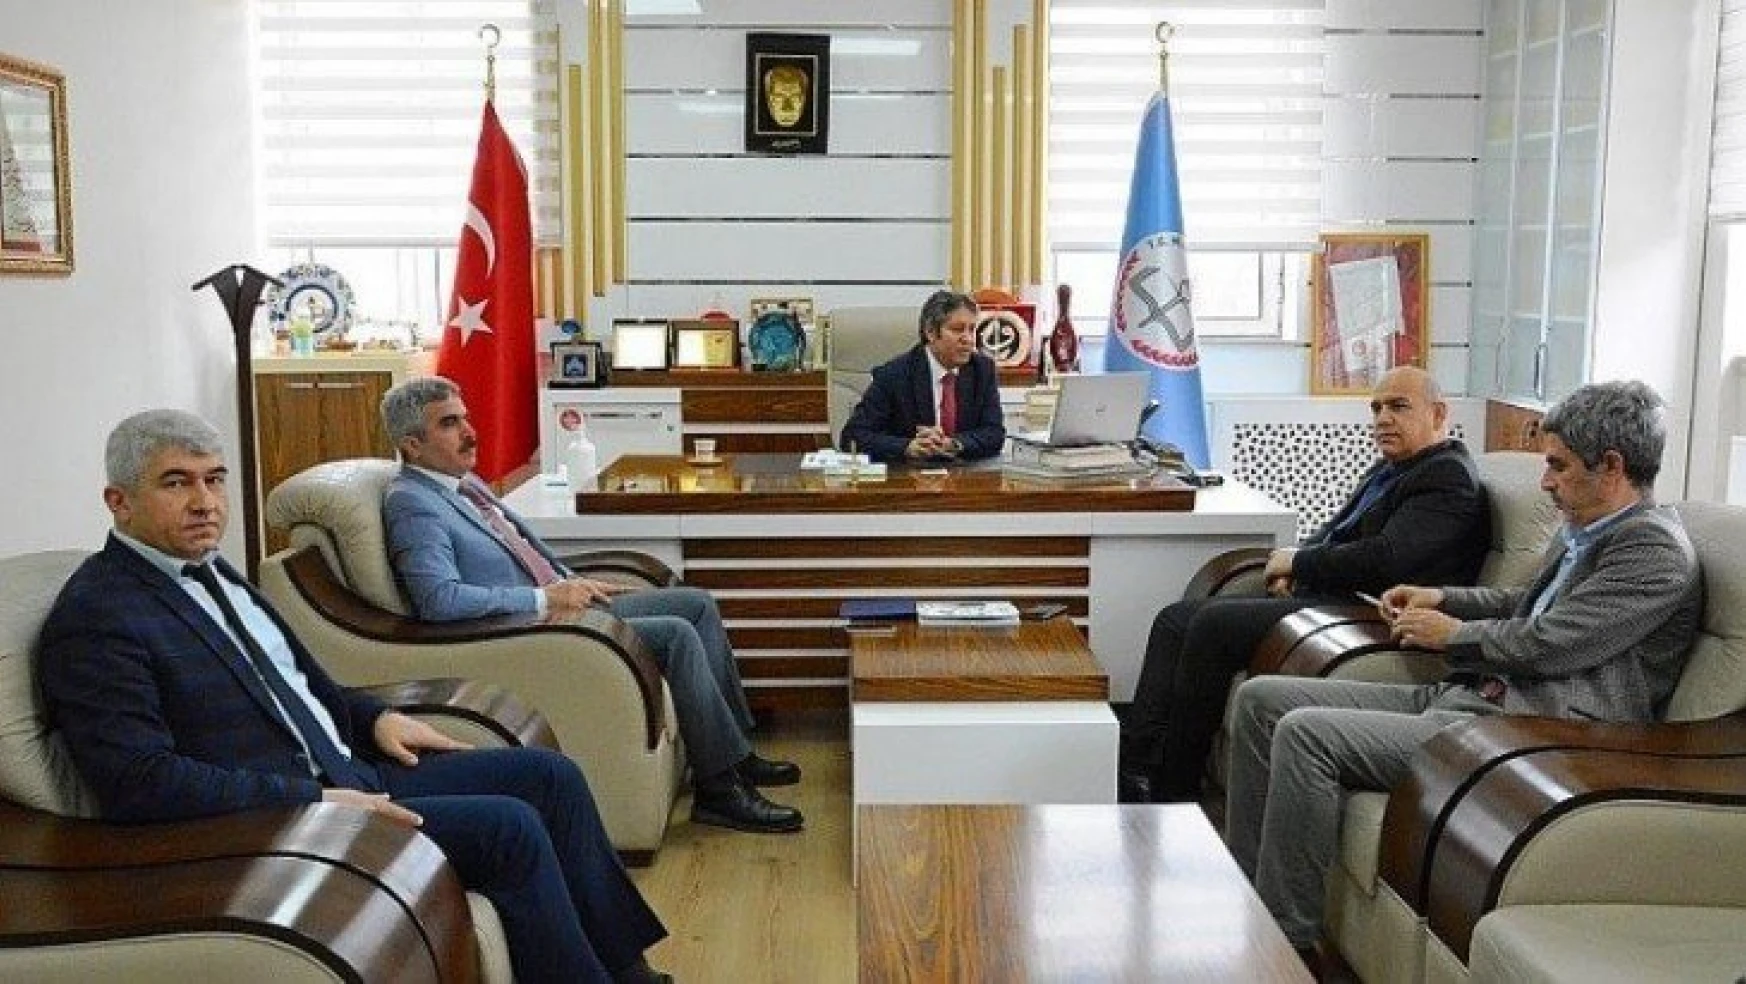 İl Milli Eğitim Müdürü Ali Tatlı, Okul Müdürleri ve Öğretmenler ile yapılan değerlendirme toplantılarını telekonferans üzerinden gerçekleştirdi.